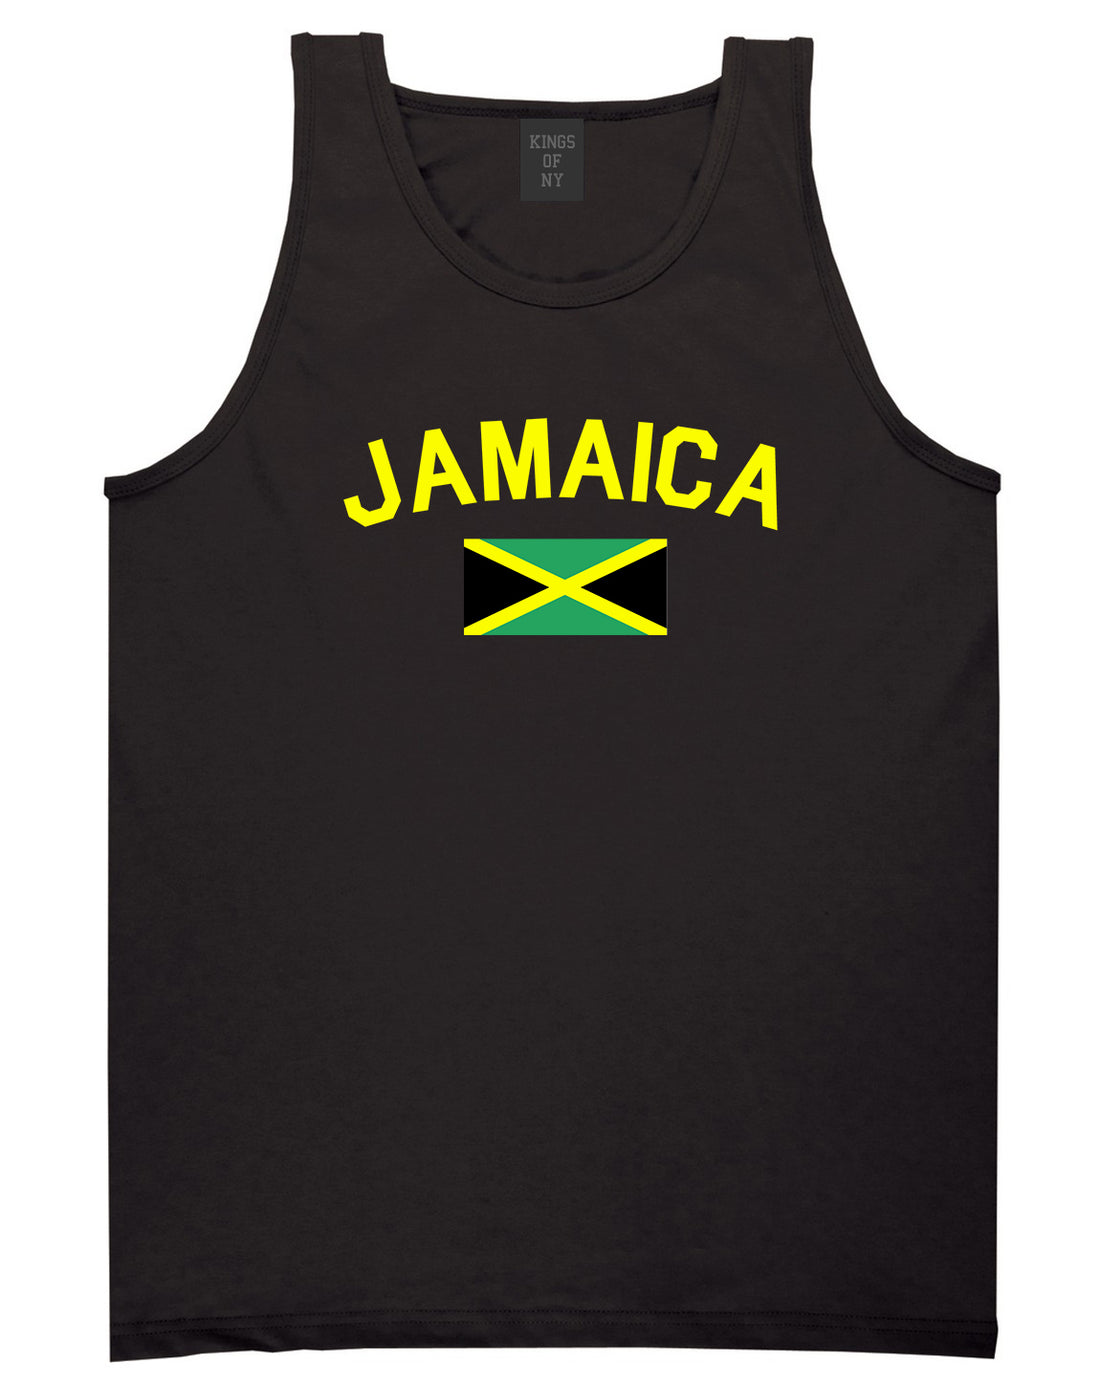 Jamaica With Jamaican Flag Mens Tank Top Shirt Black